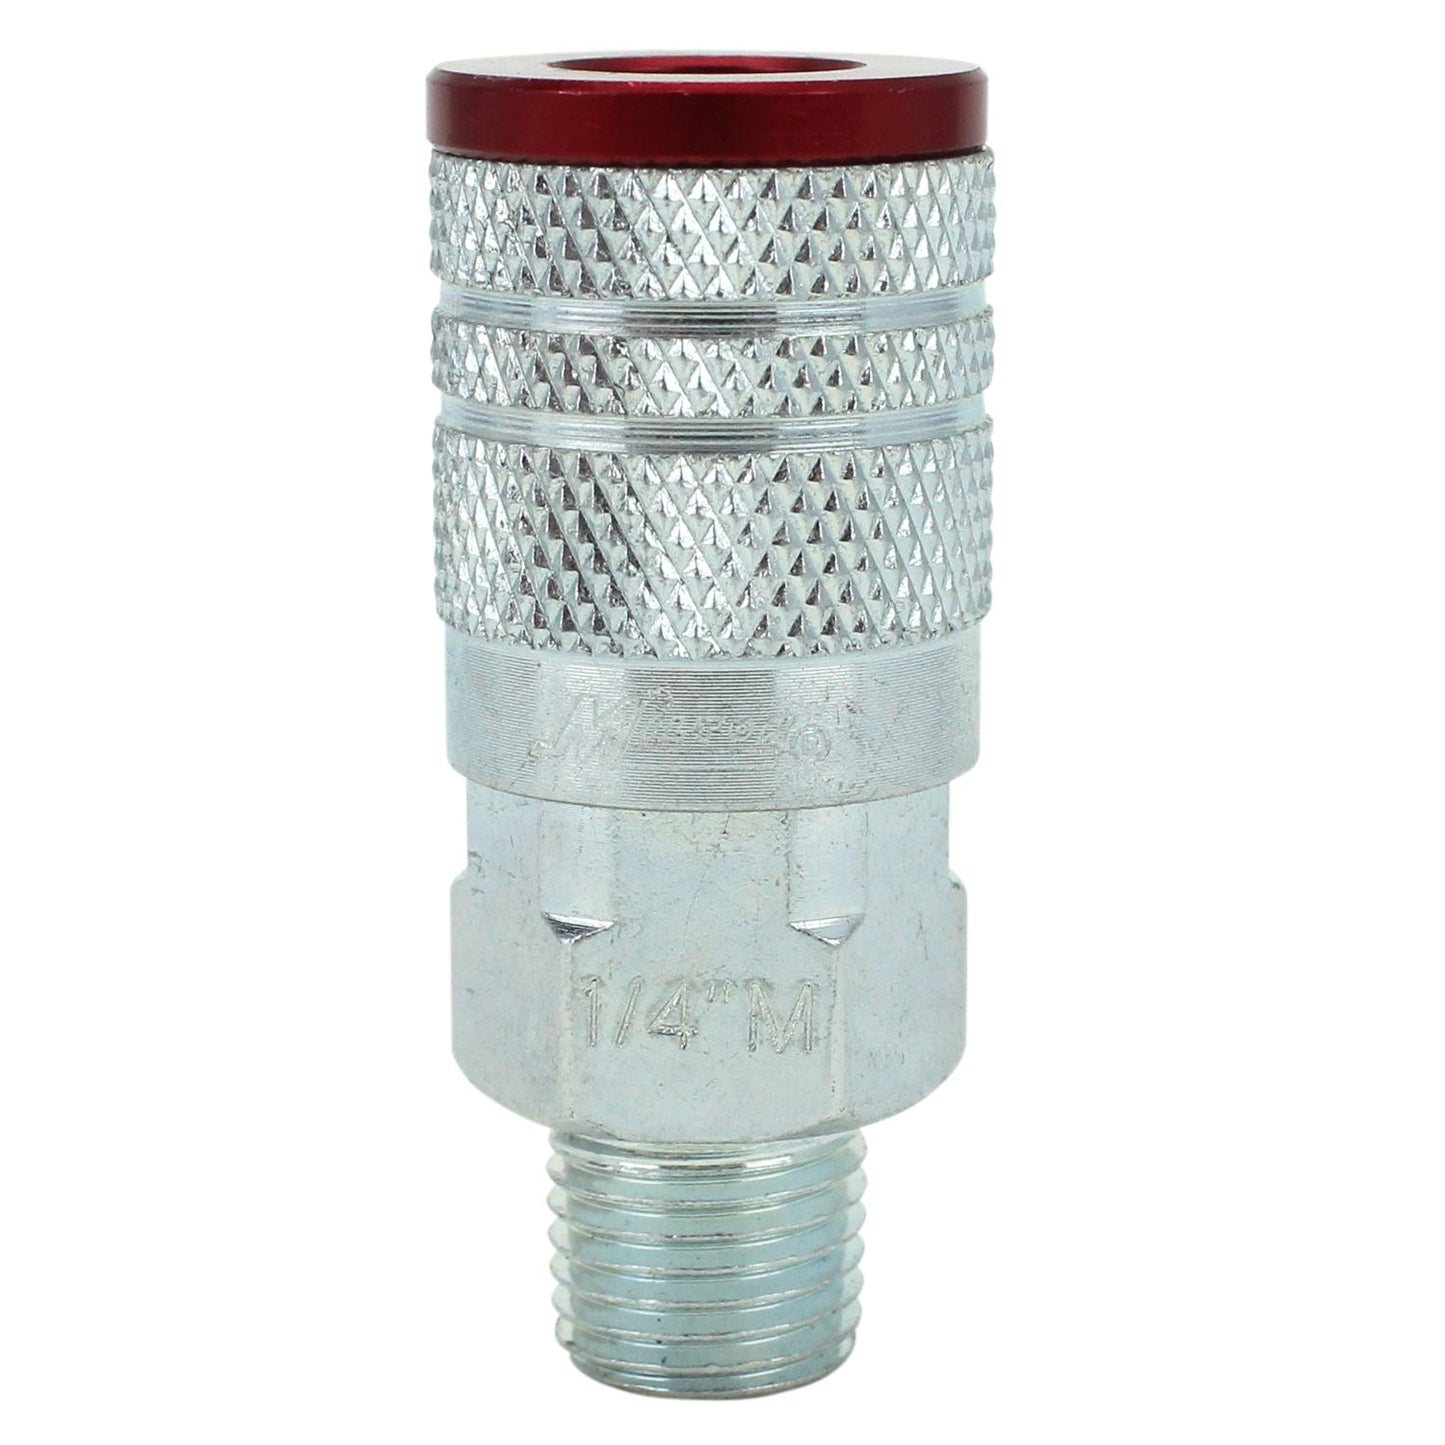 Milton® COLORFIT® Coupler & Plug Kit - (M-STYLE® , Red) - 1/4" NPT (14-Piece)